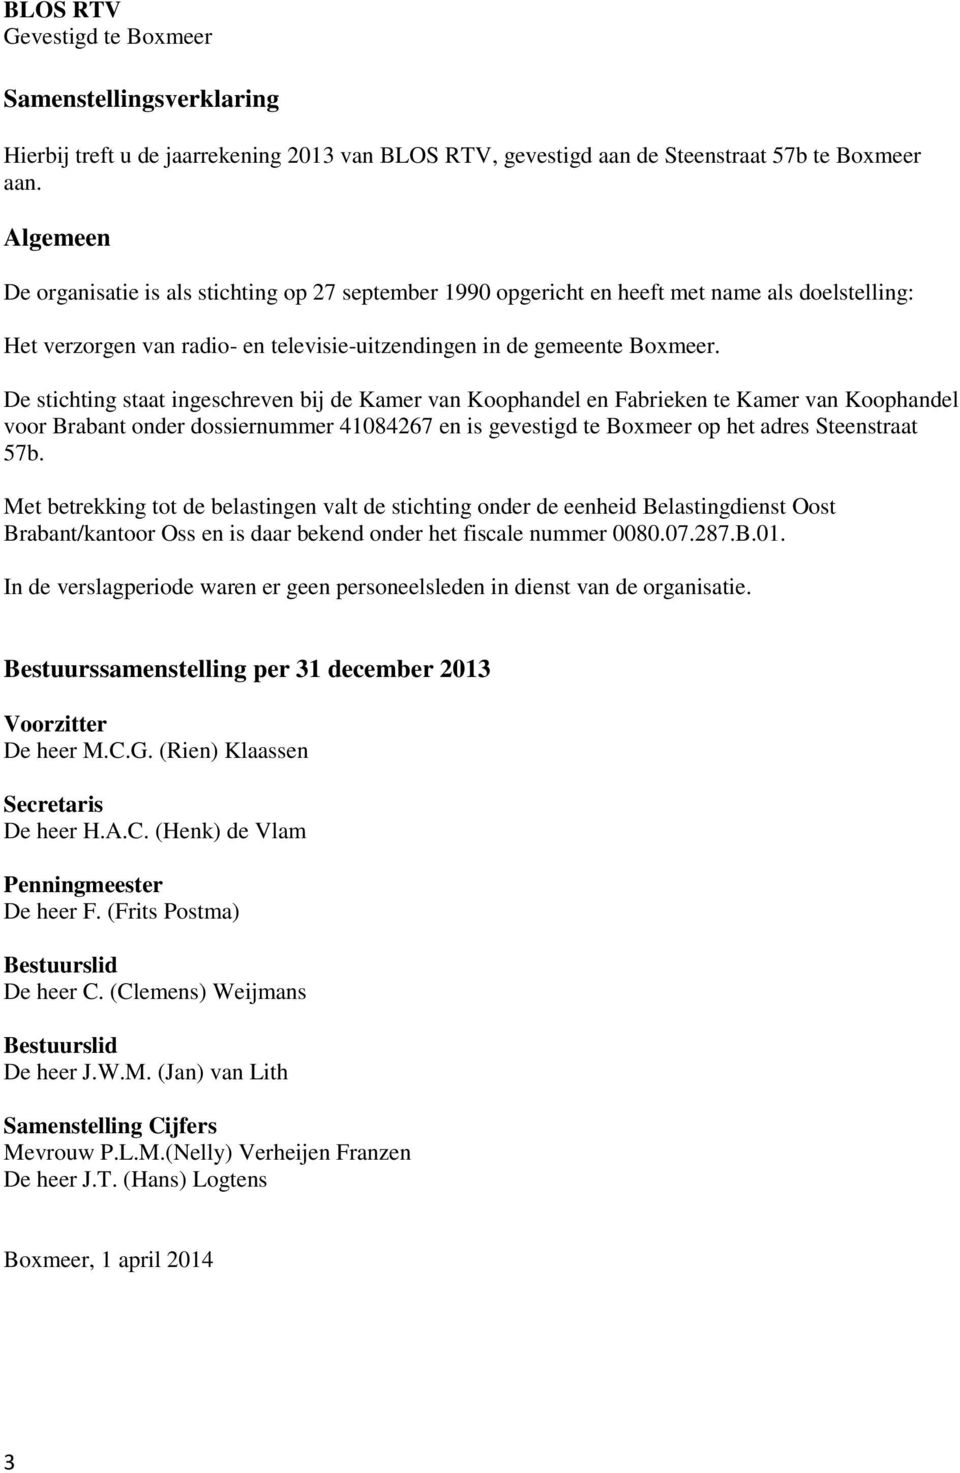 De stichting staat ingeschreven bij de Kamer van Koophandel en Fabrieken te Kamer van Koophandel voor Brabant onder dossiernummer 41084267 en is gevestigd te Boxmeer op het adres Steenstraat 57b.